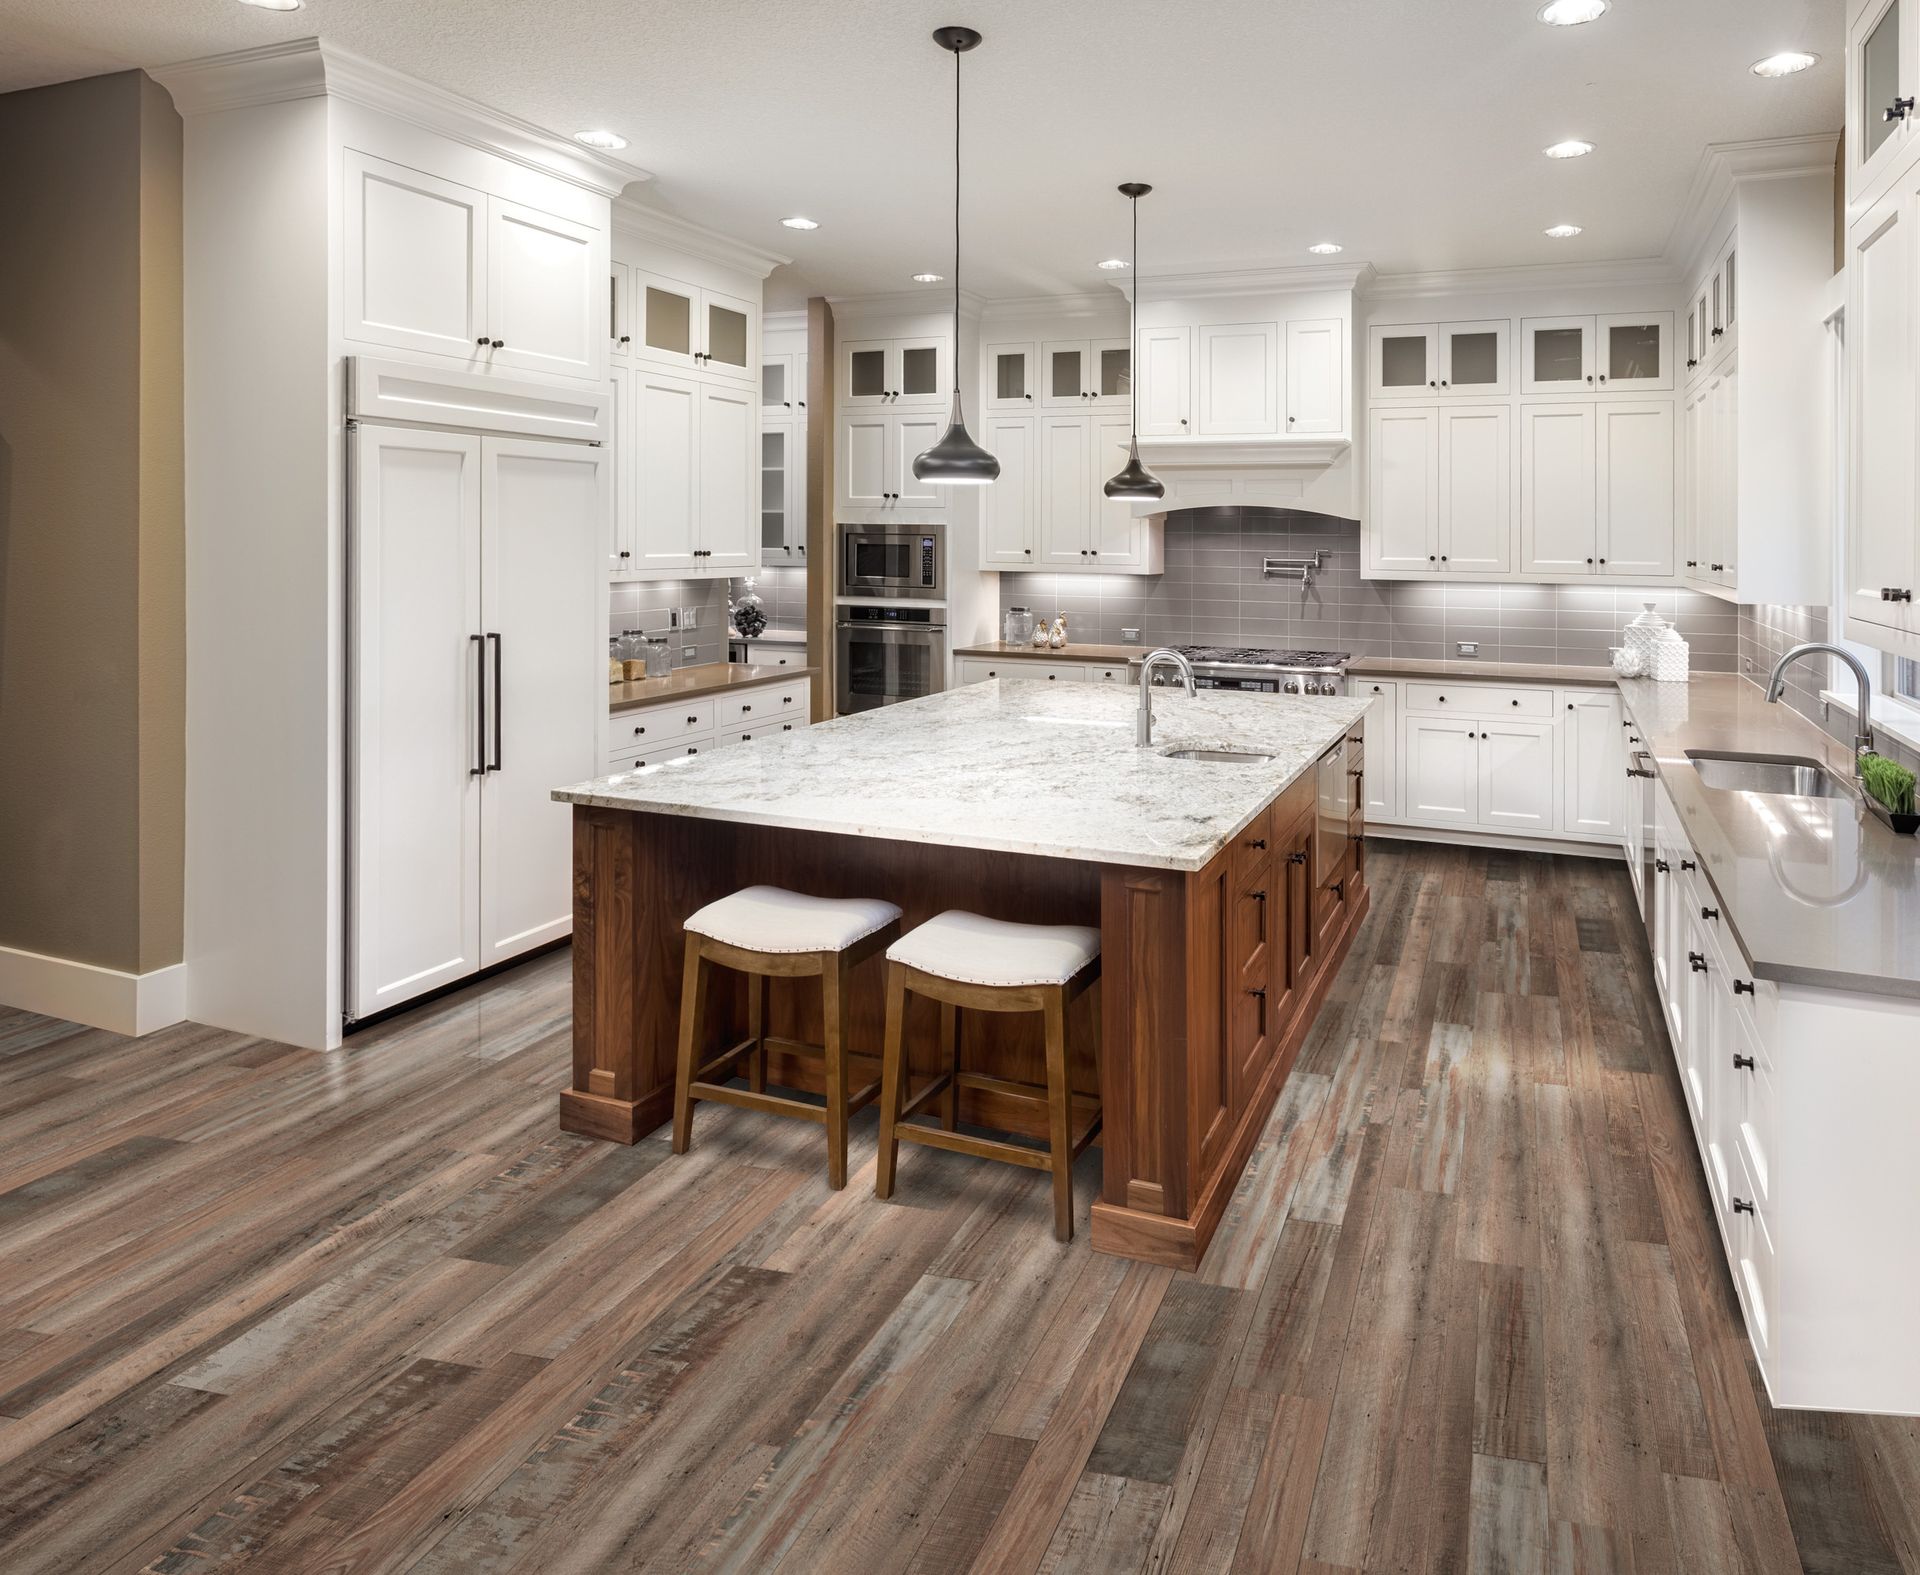 vinyl kitchen flooring redefined pine